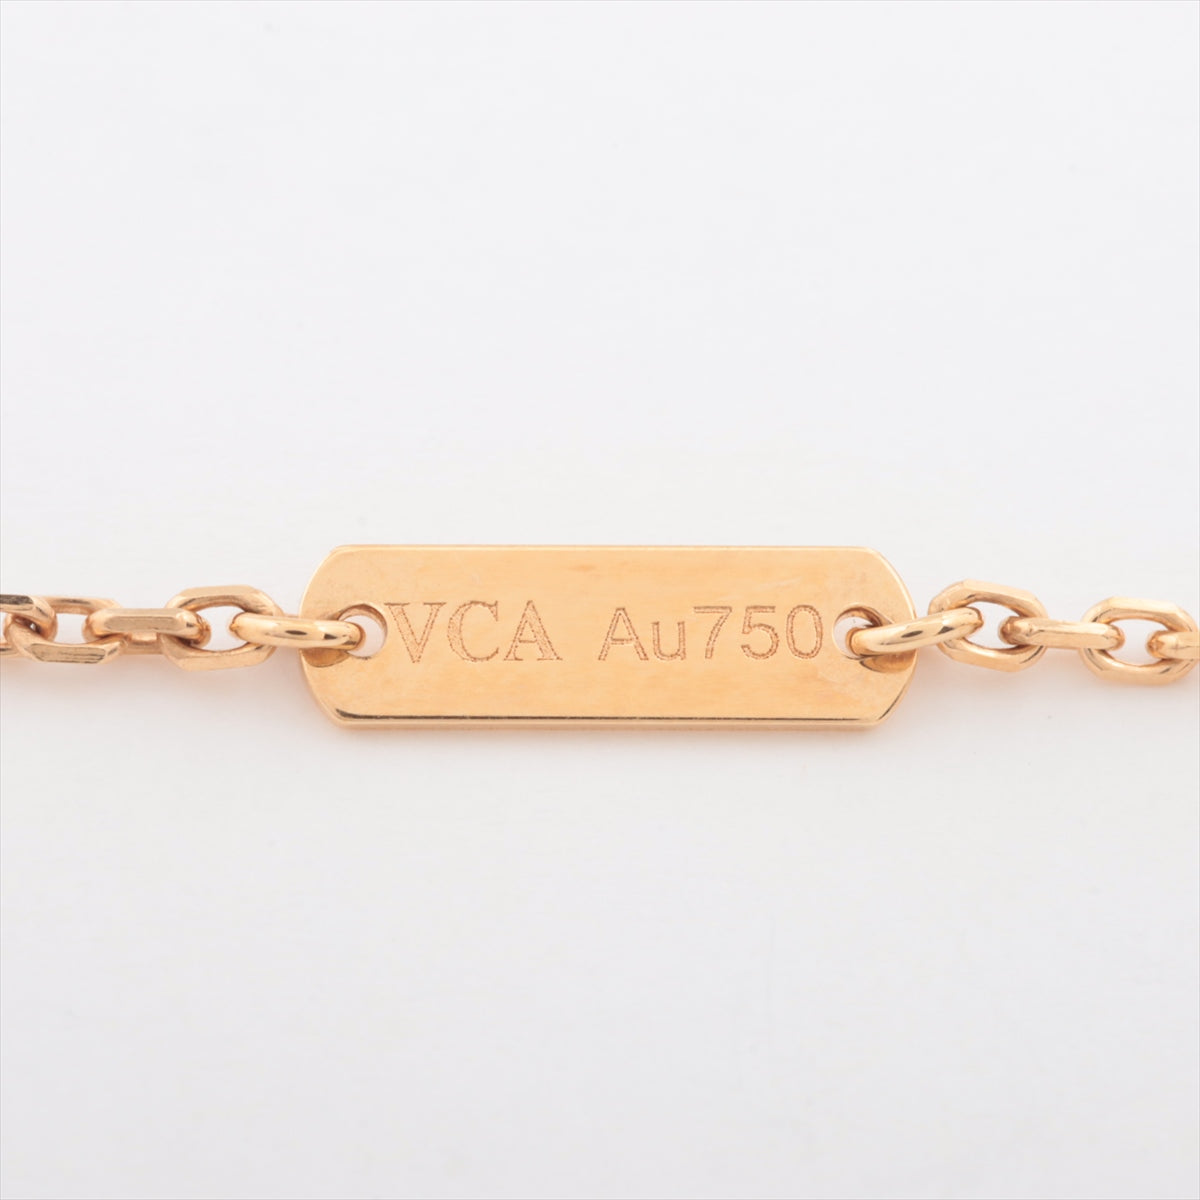 Van Cleef & Arpels Vintage Alhambra Golden S 鑽石項链 750 （YG） 6.5g VCARP2R700 2018 Limited